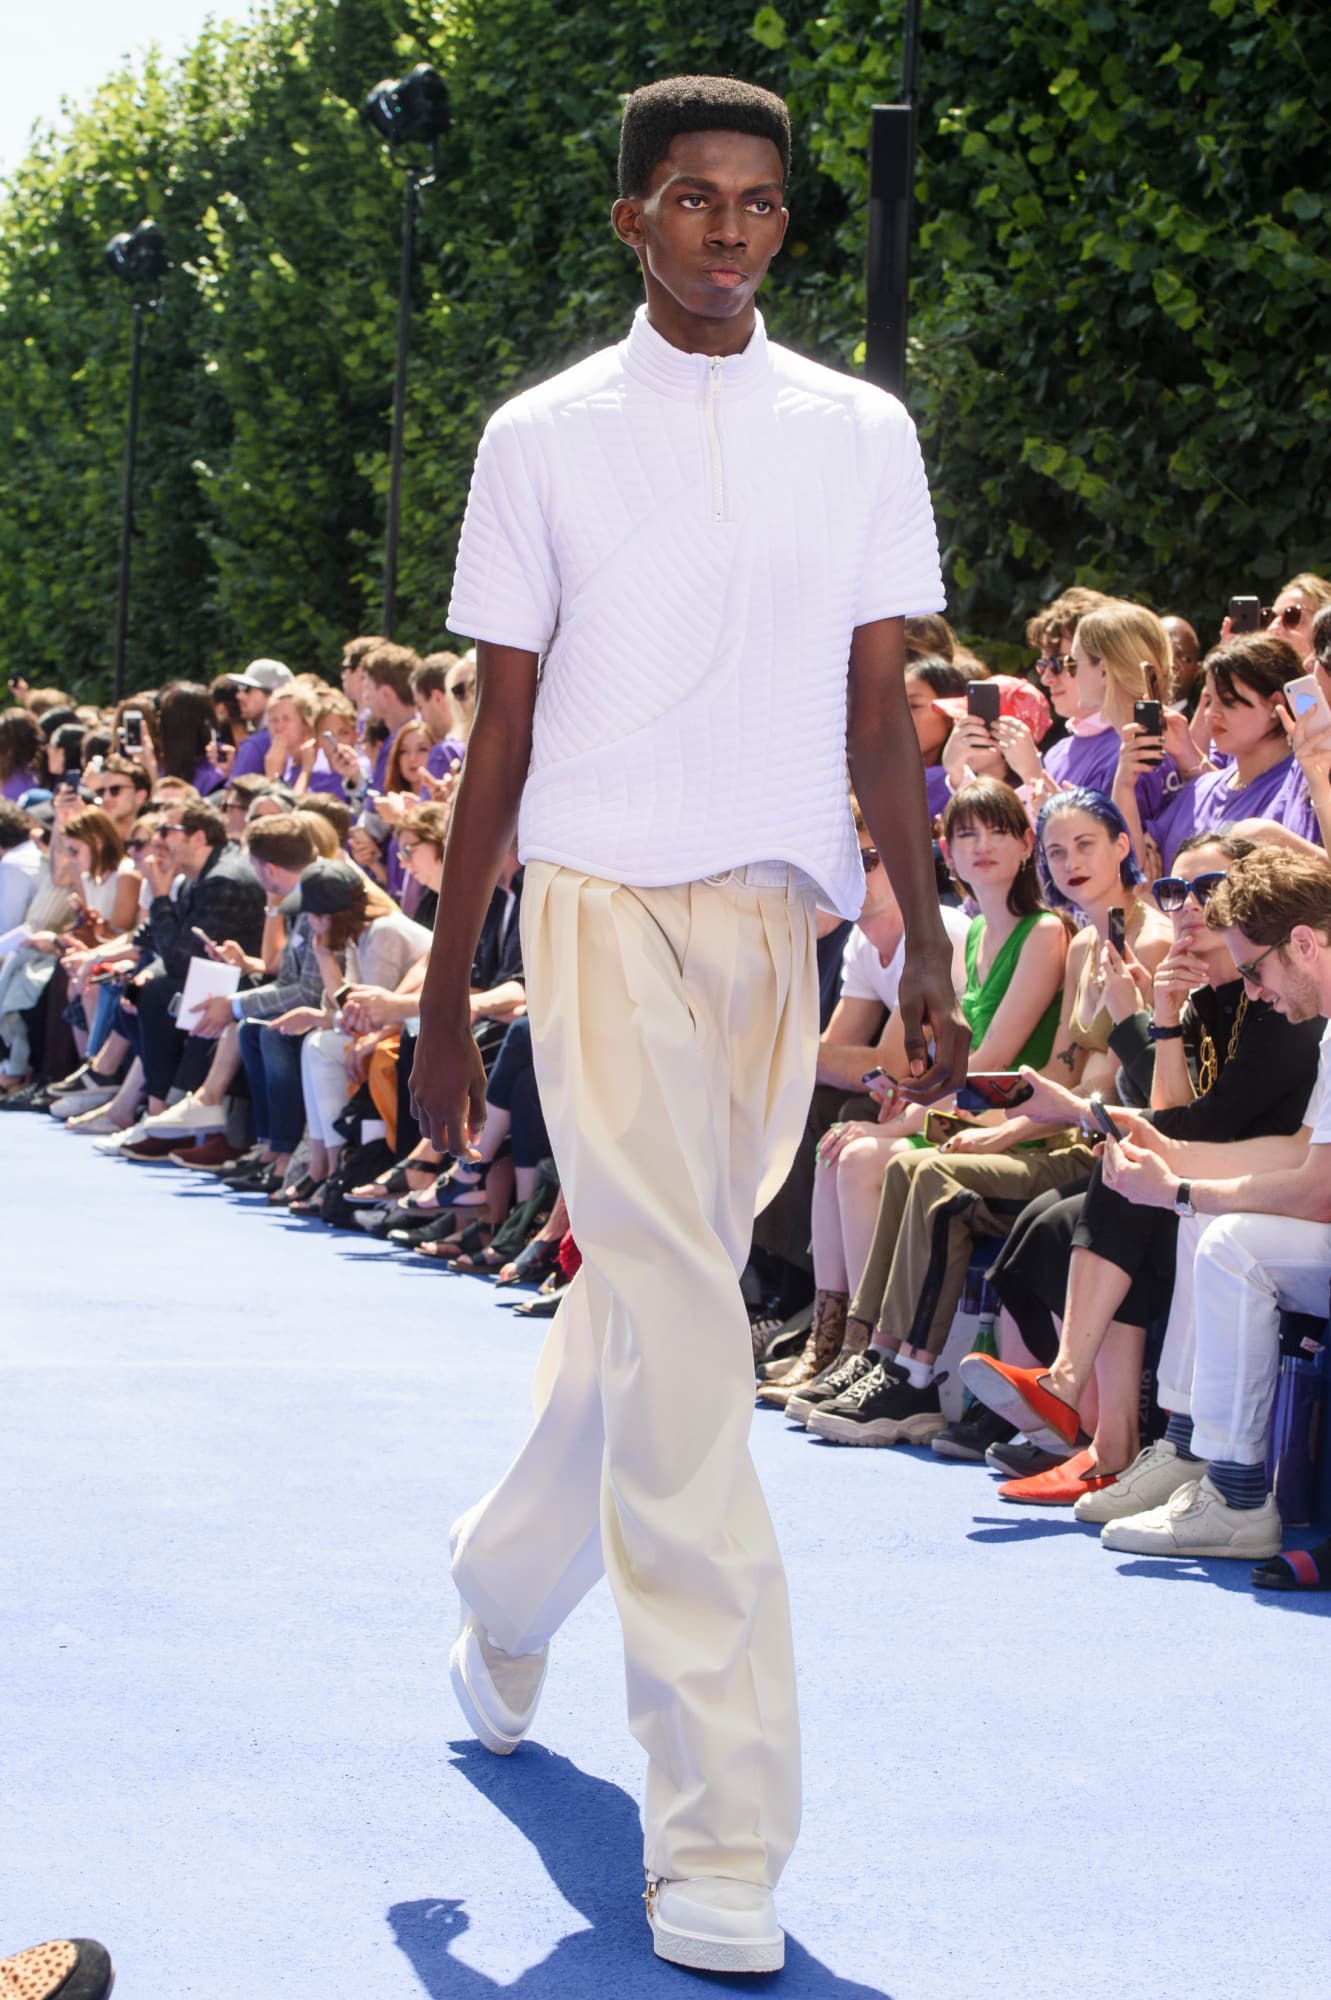 MakeAPromise: Louis Vuitton's Virgil Abloh debuts his own versions